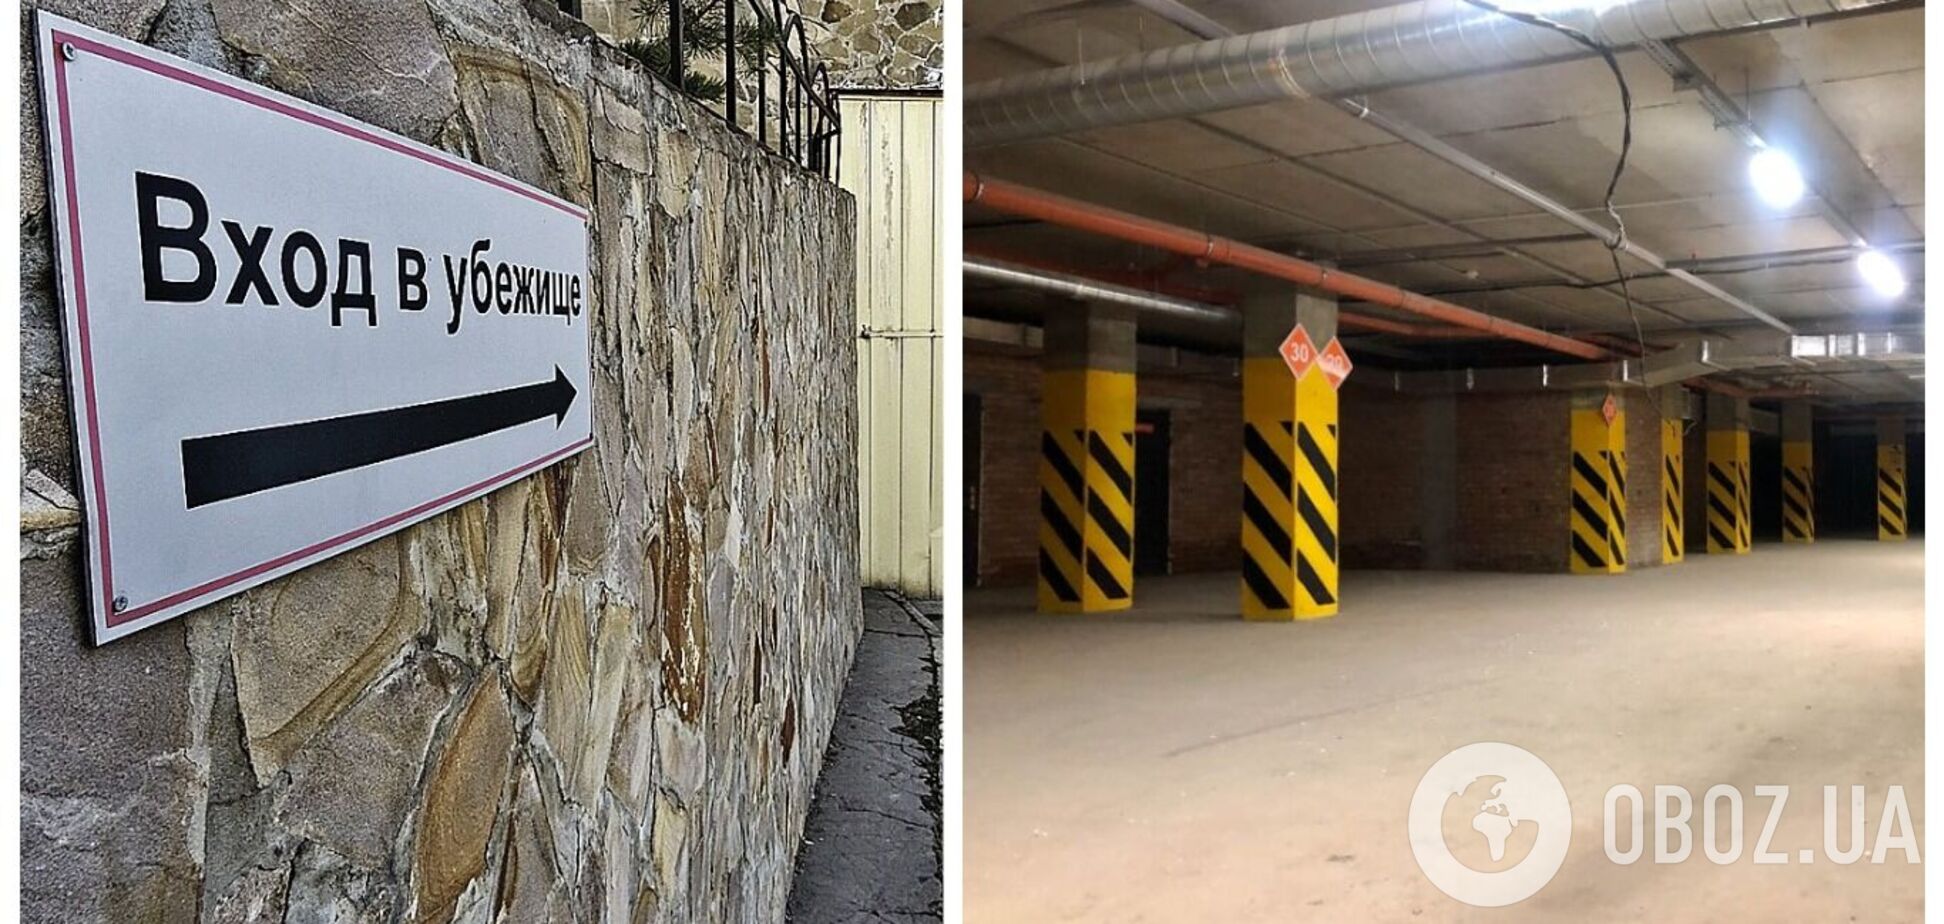 У Москві почали терміново облаштовувати бомбосховища: в хід пішли підземні паркінги